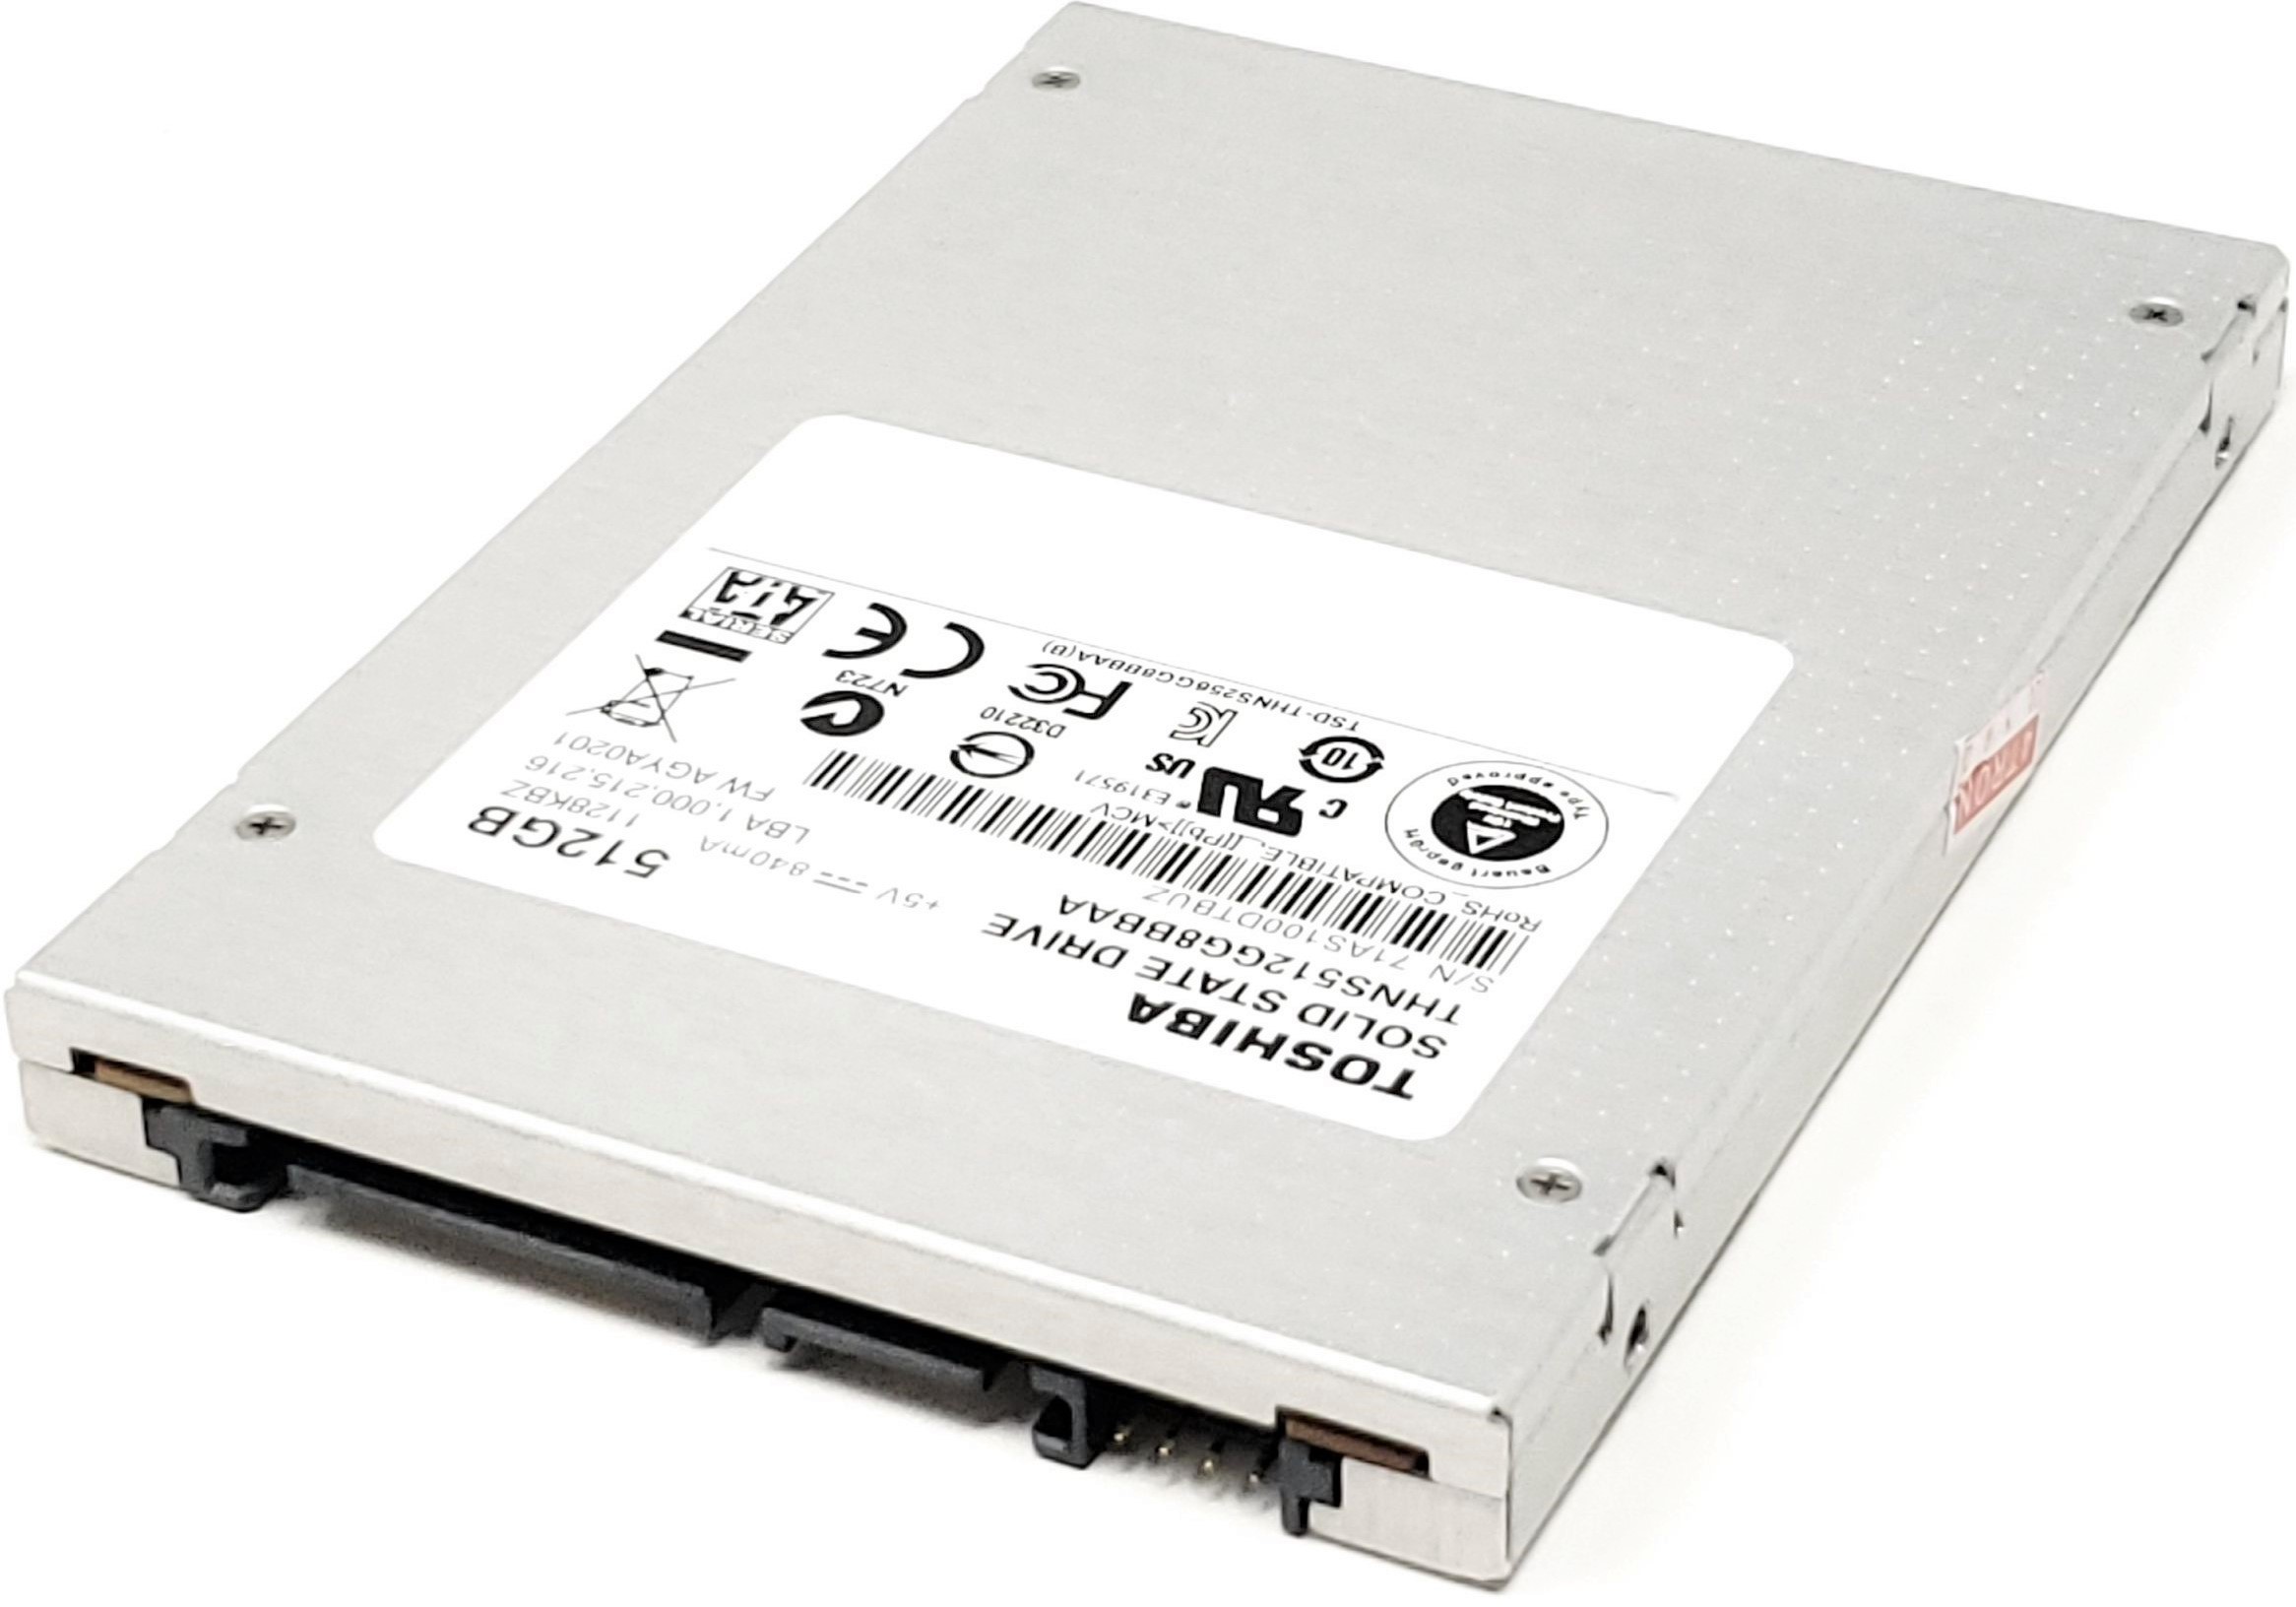 5SD0L77695 - 512GB 6Gbps SATA III 7mm 2.5" Solid State SSD - Medics